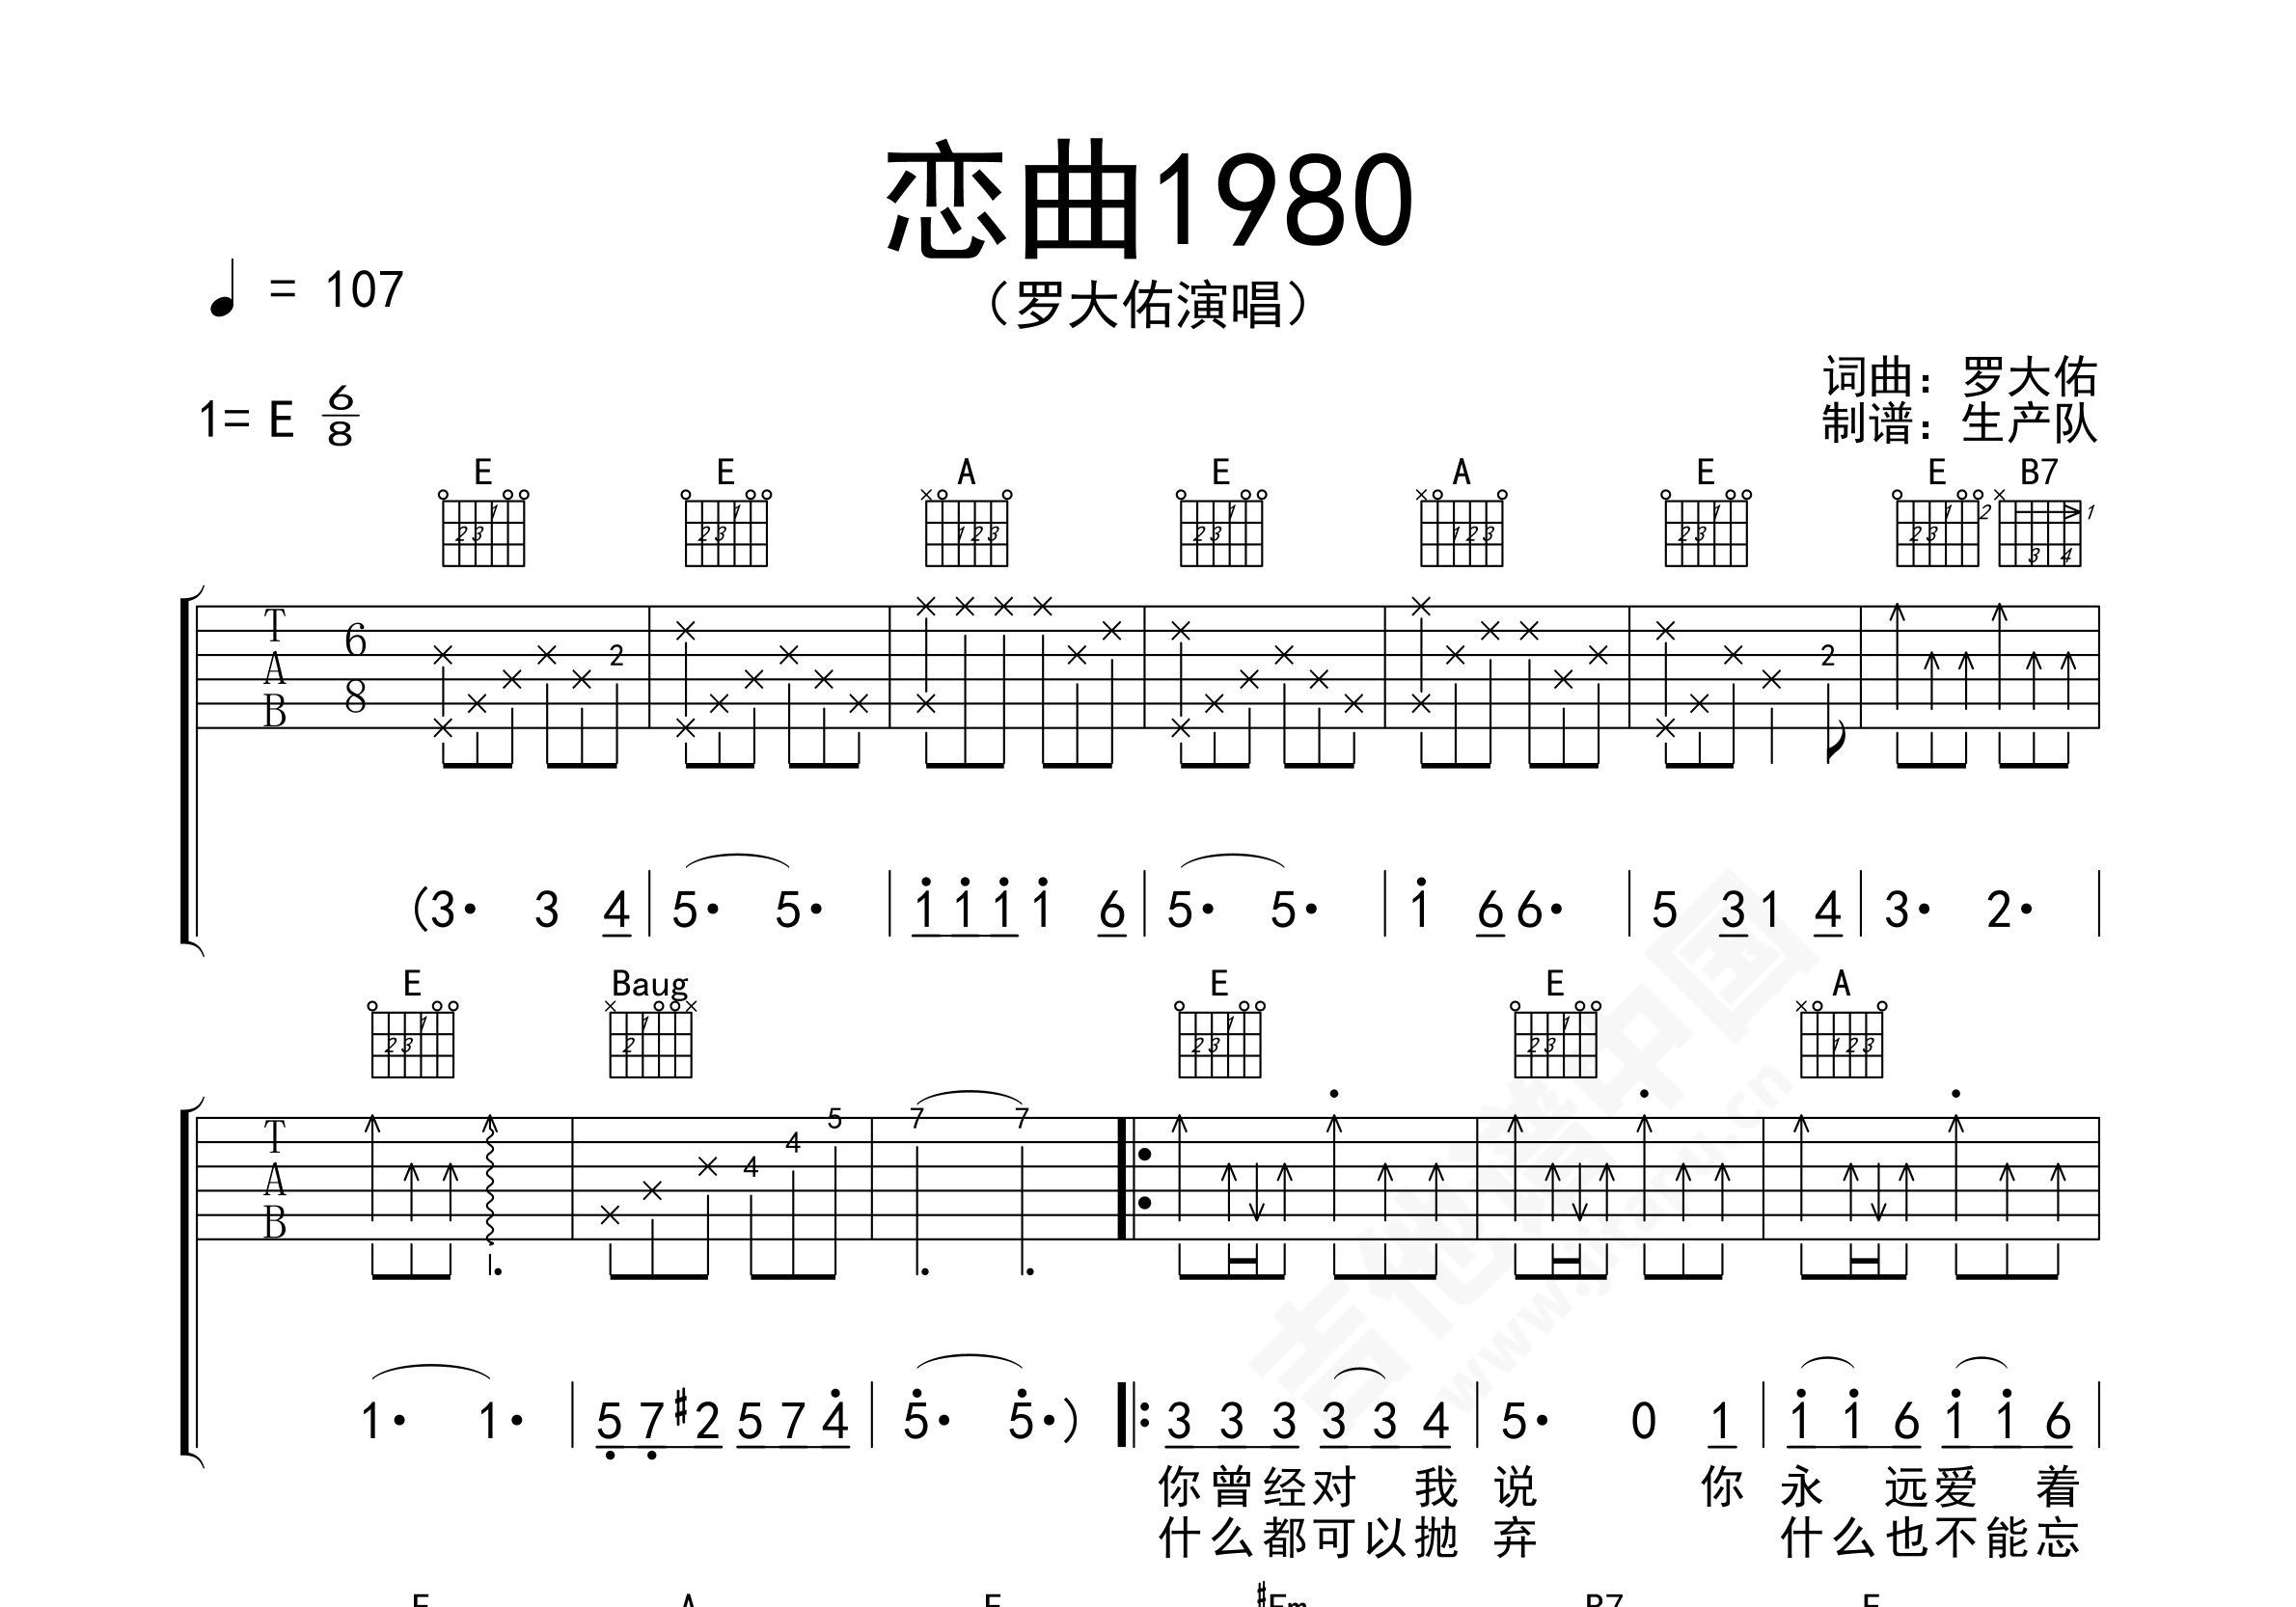 罗大佑 - 童年（14吉他屋学员live技巧版） [14吉他屋 弹唱] 吉他谱